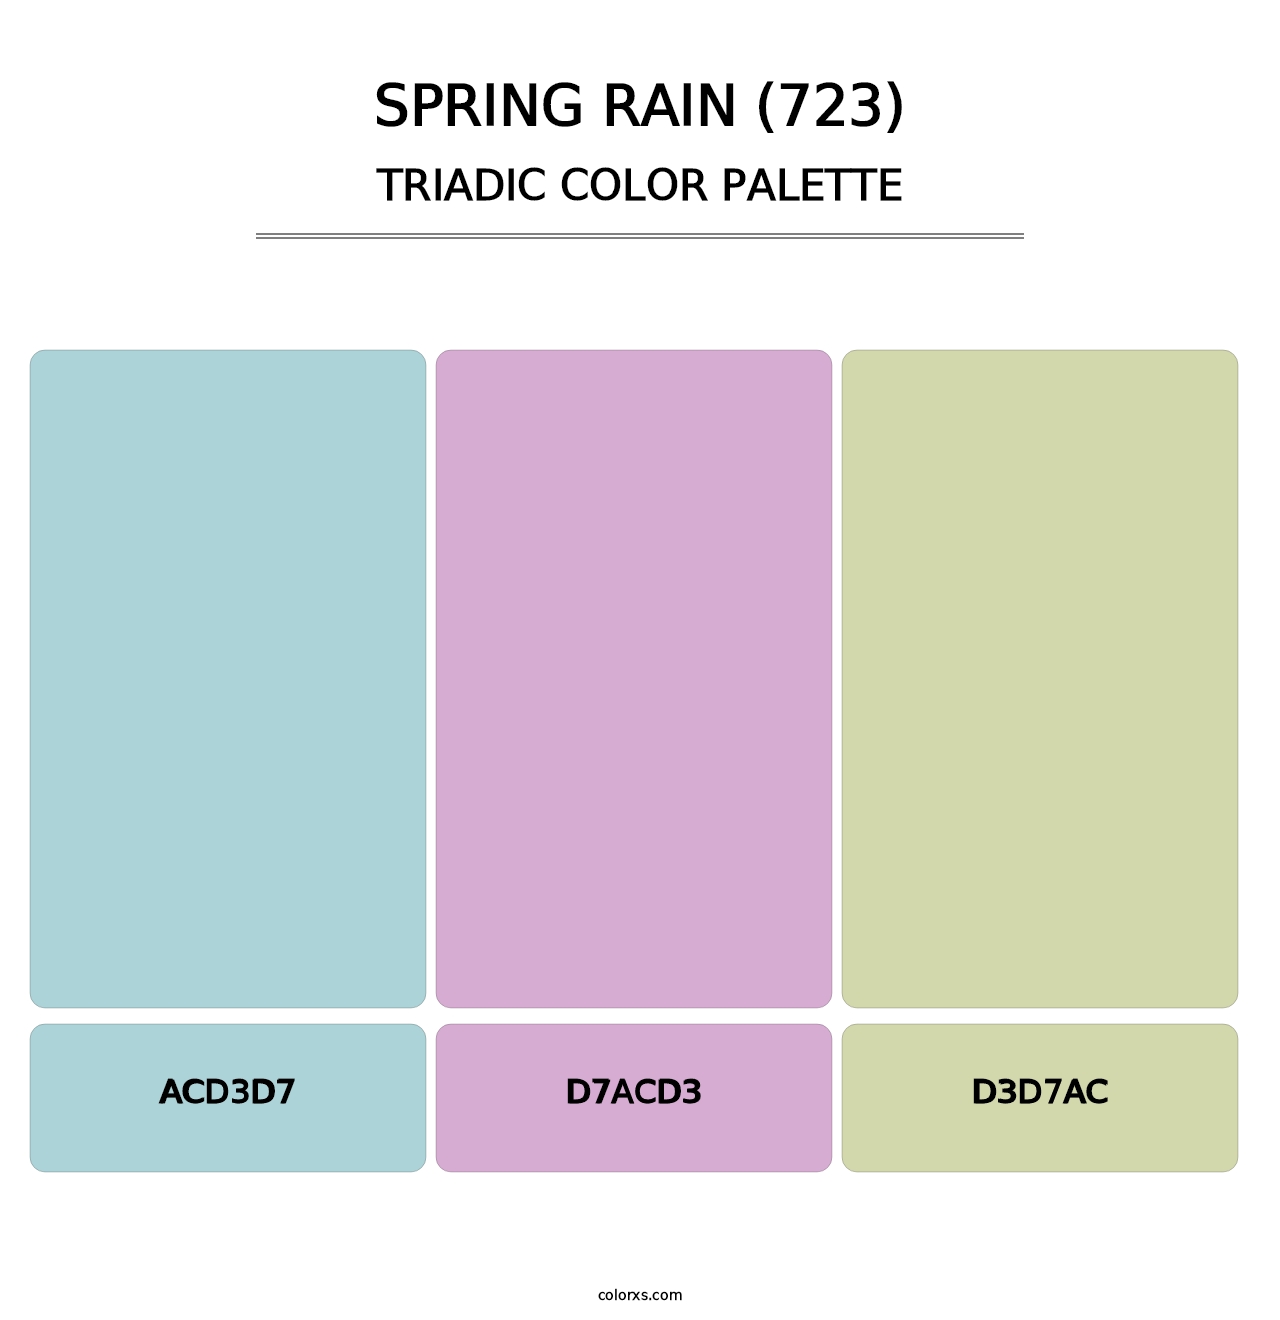 Spring Rain (723) - Triadic Color Palette